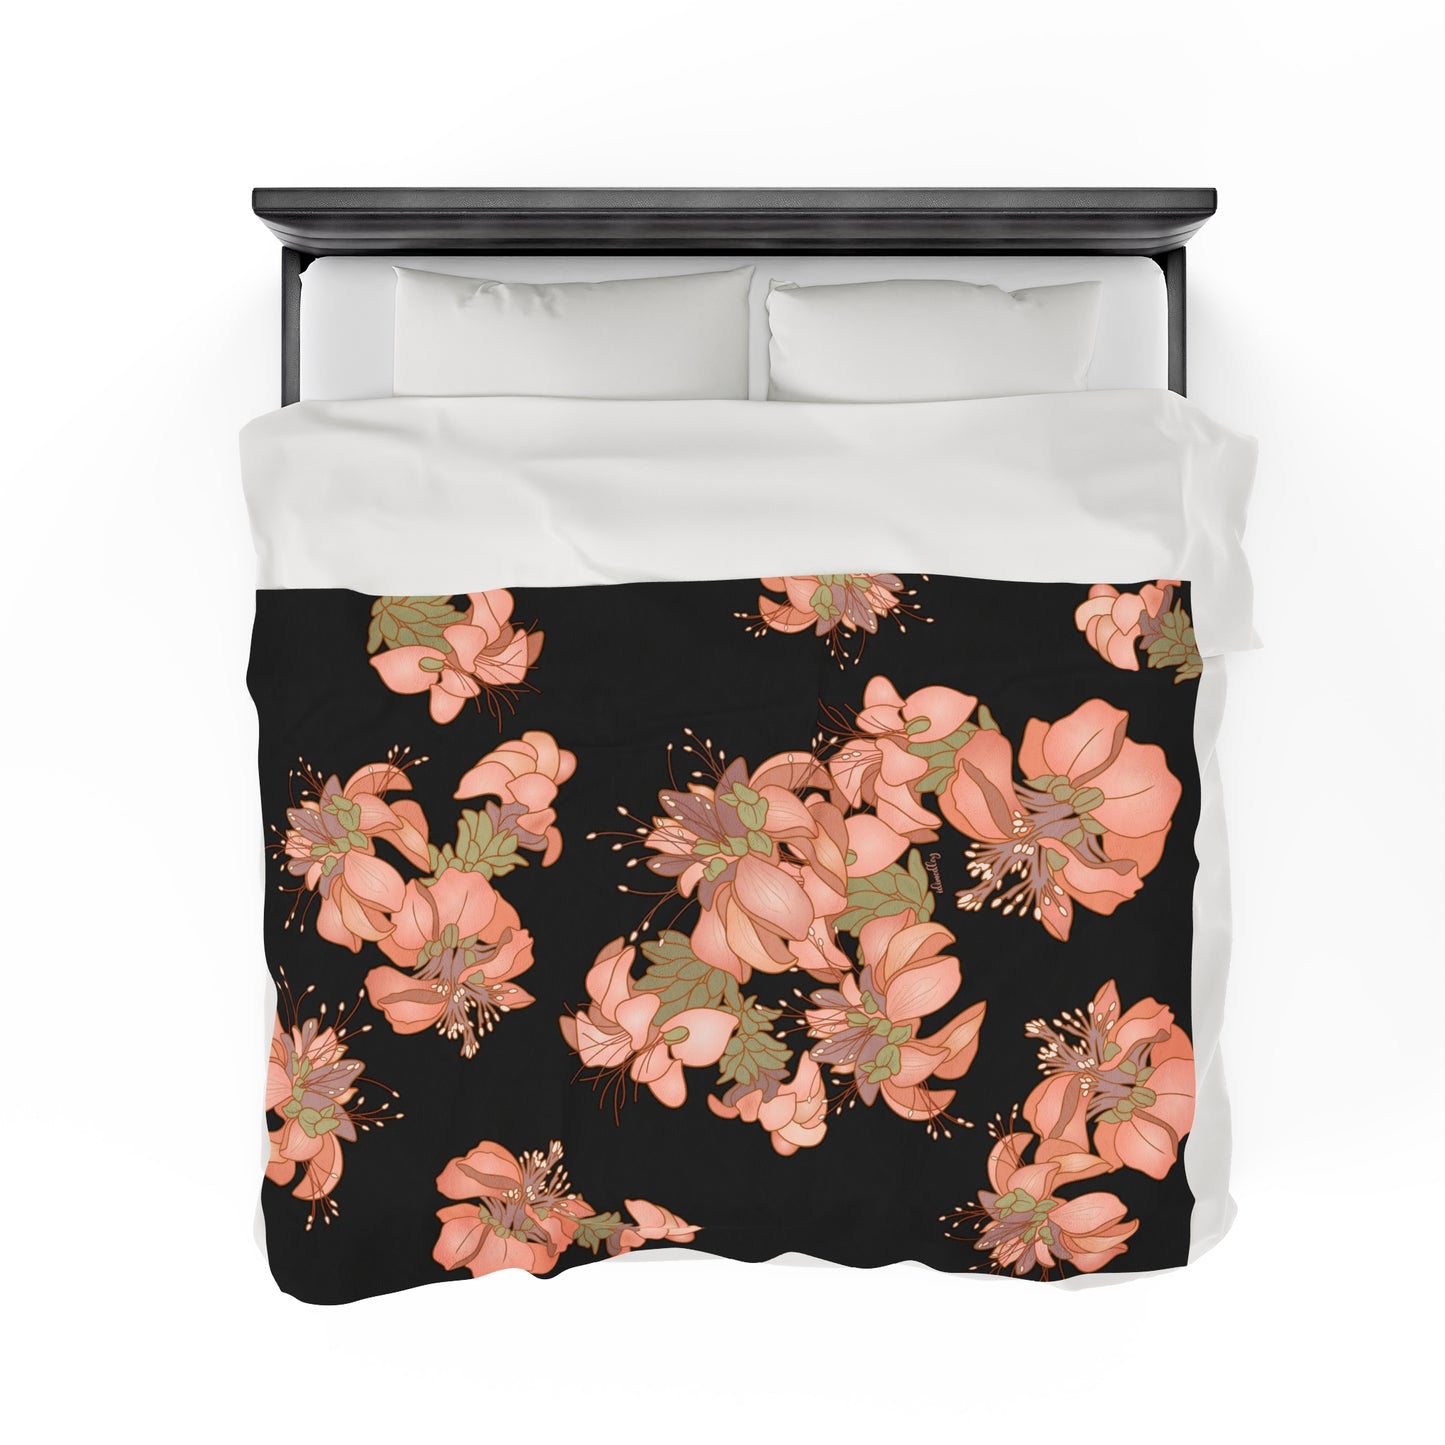 Incredibly Soft Velveteen Blanket- Wili Wili Flower Clusters